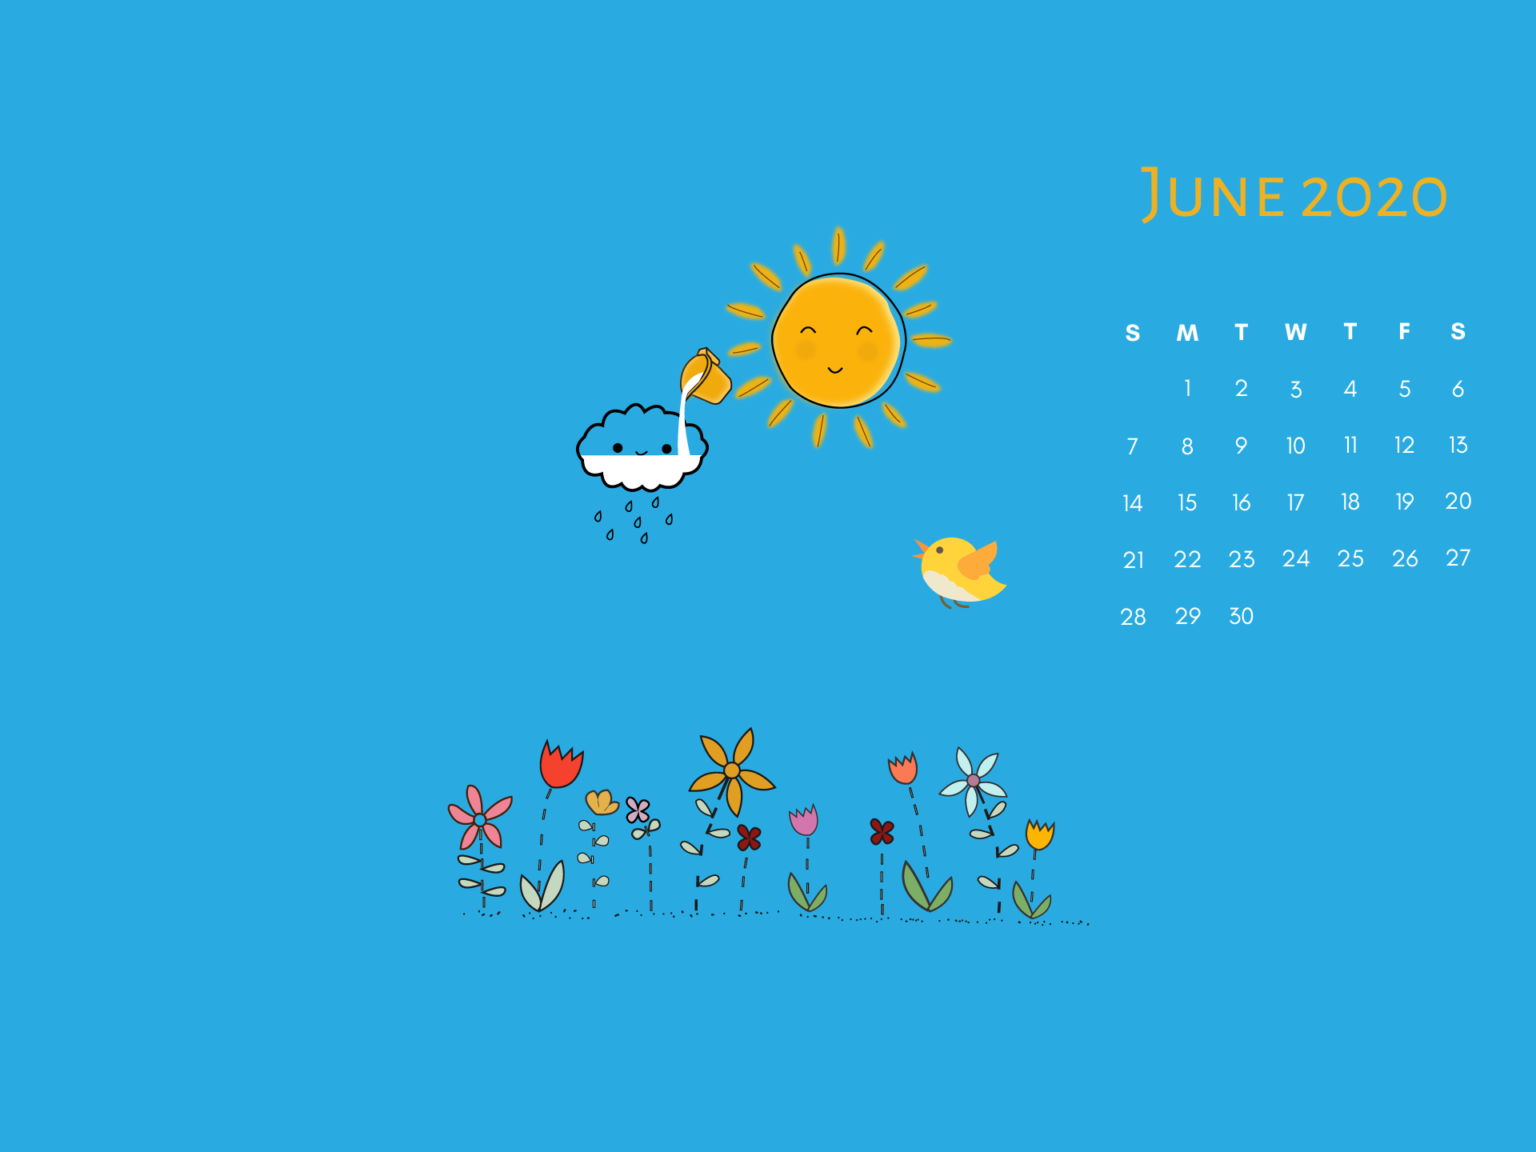 June 2020 Summer Calendar Wallpaper